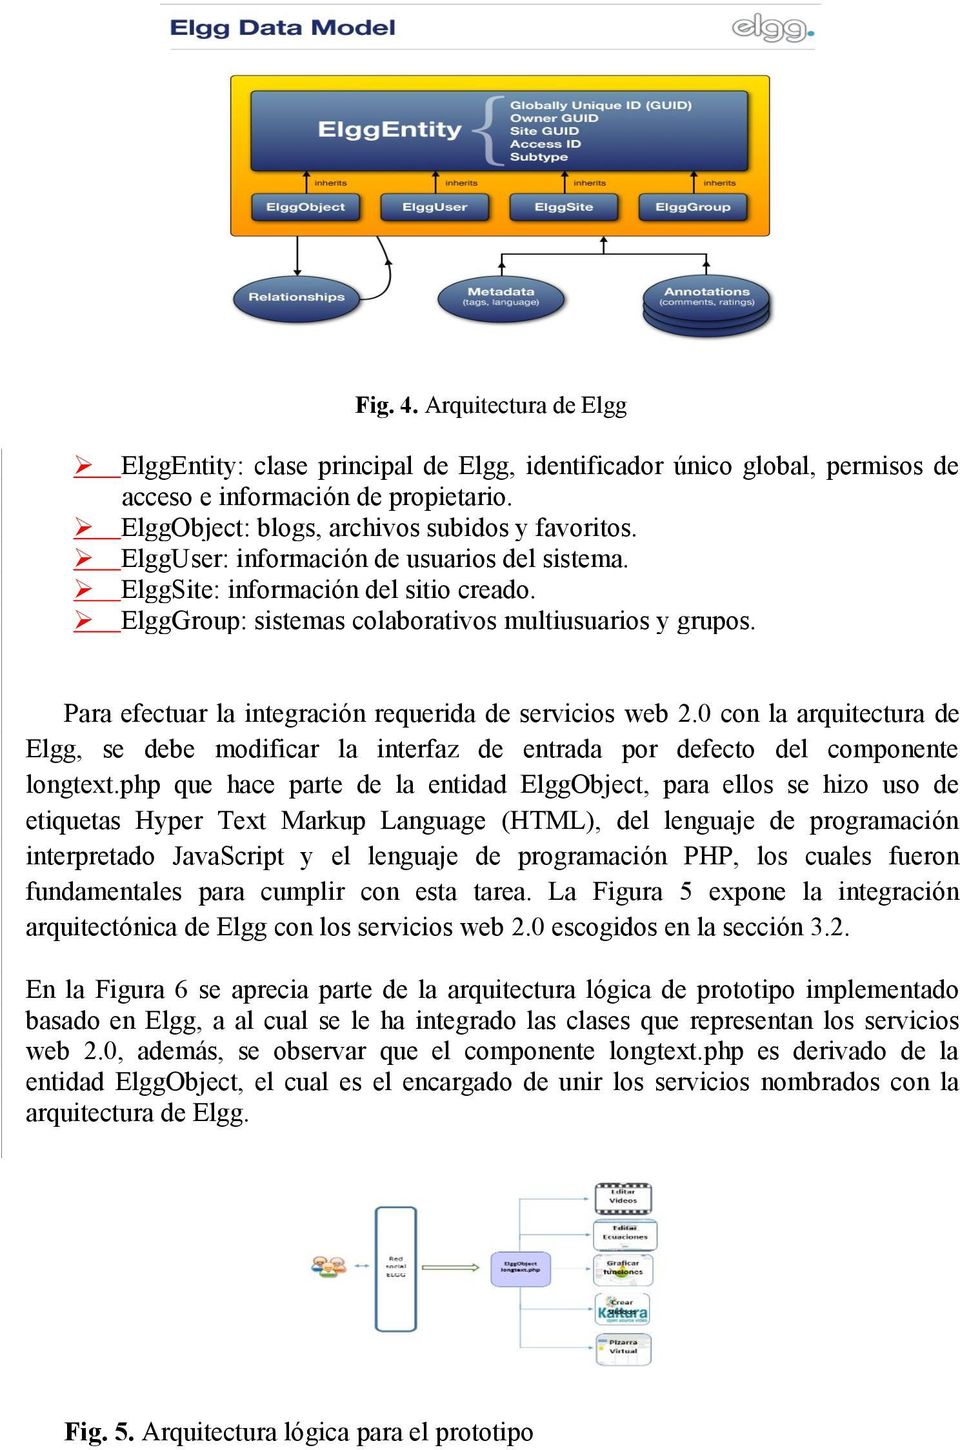 Para efectuar la integración requerida de servicios web 2.0 con la arquitectura de Elgg, se debe modificar la interfaz de entrada por defecto del componente longtext.